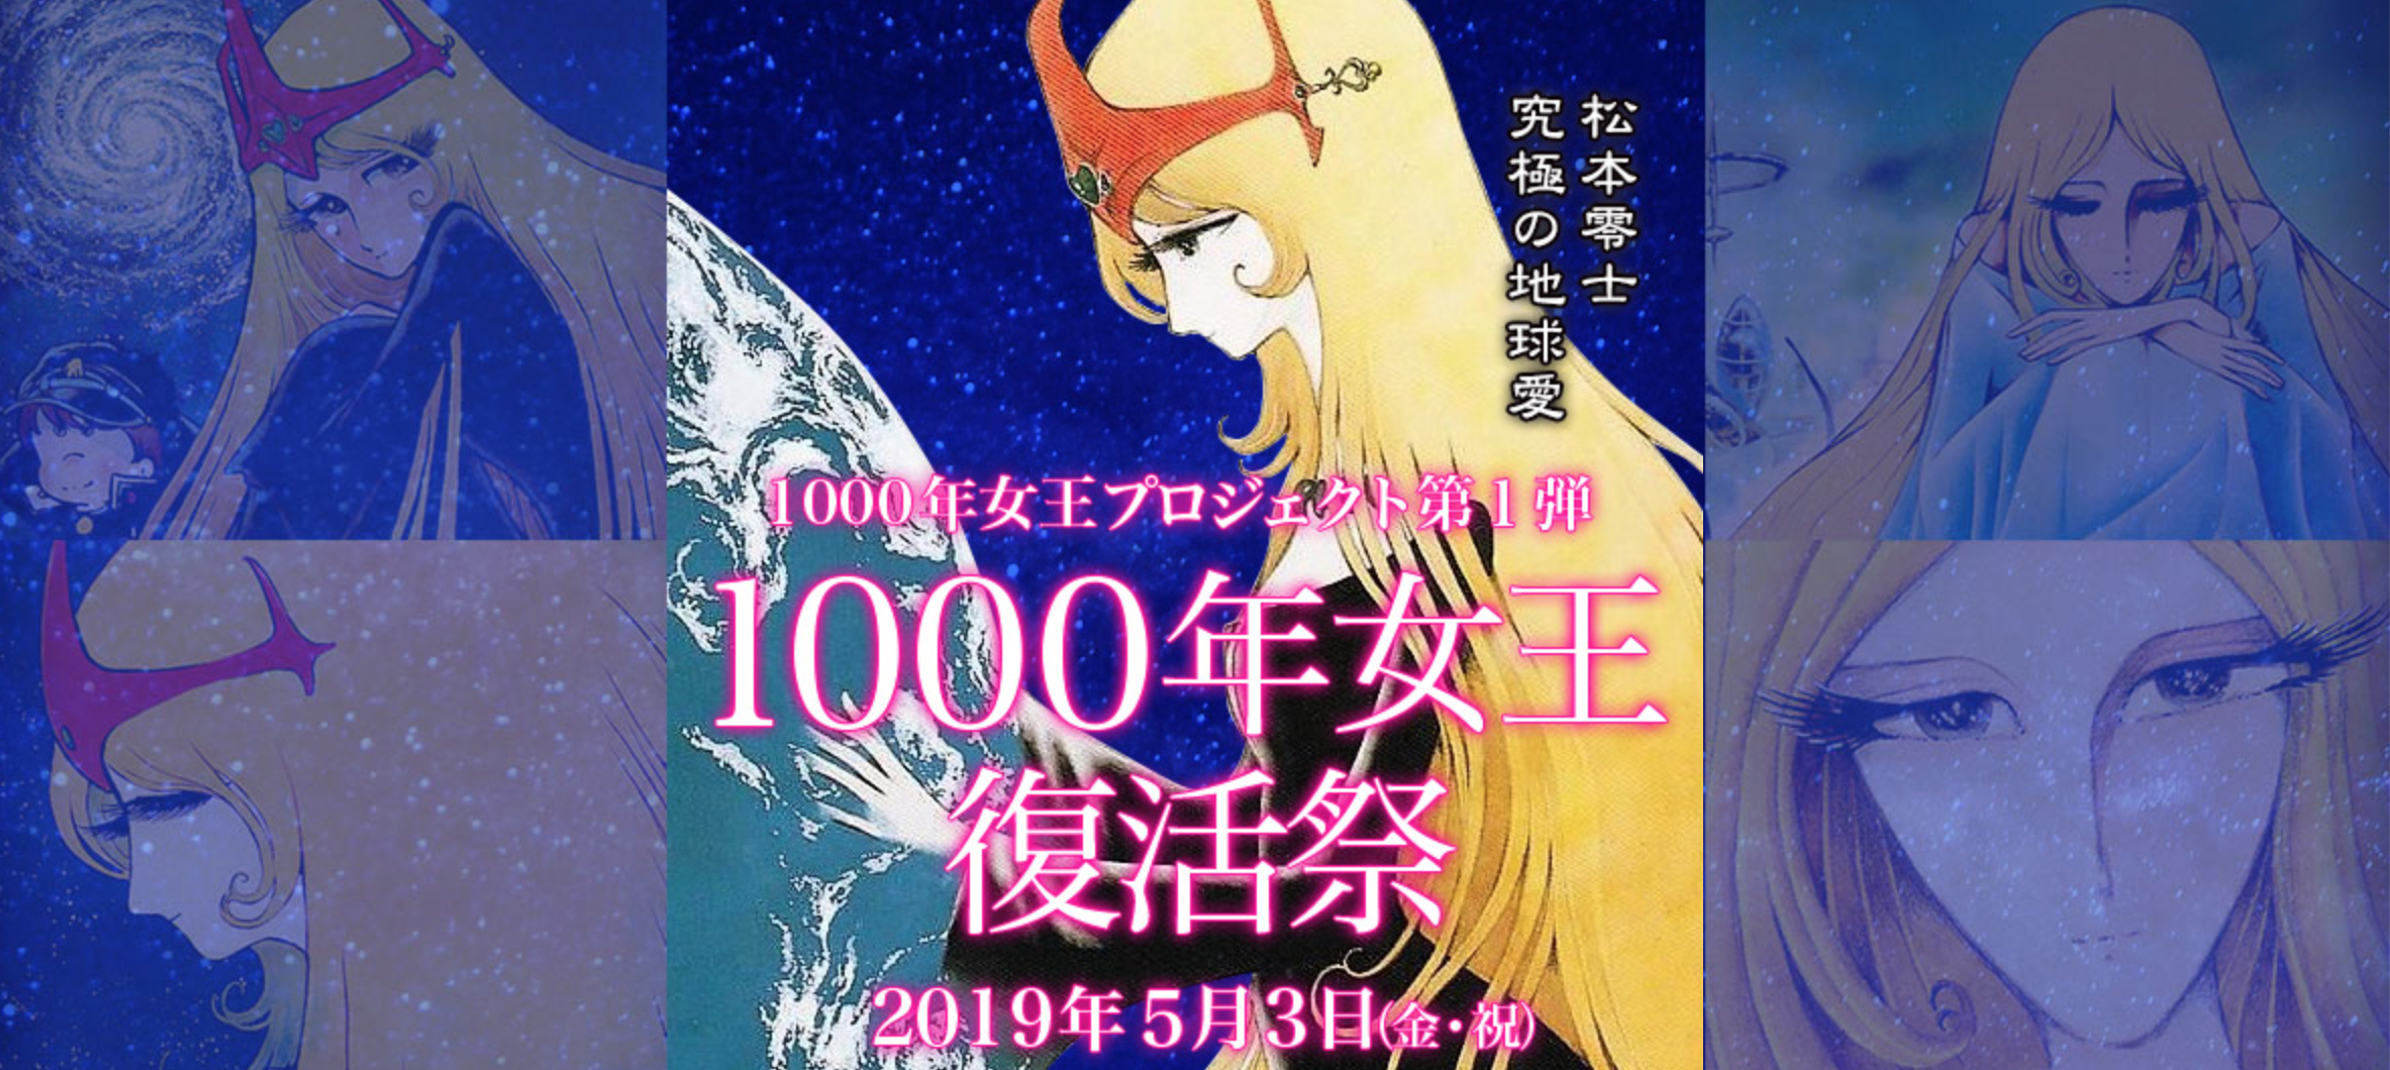 つくばは物語のふるさと 巨匠 松本零士 新竹取物語 1000年女王 が40年目の復活 つくば市のプレスリリース